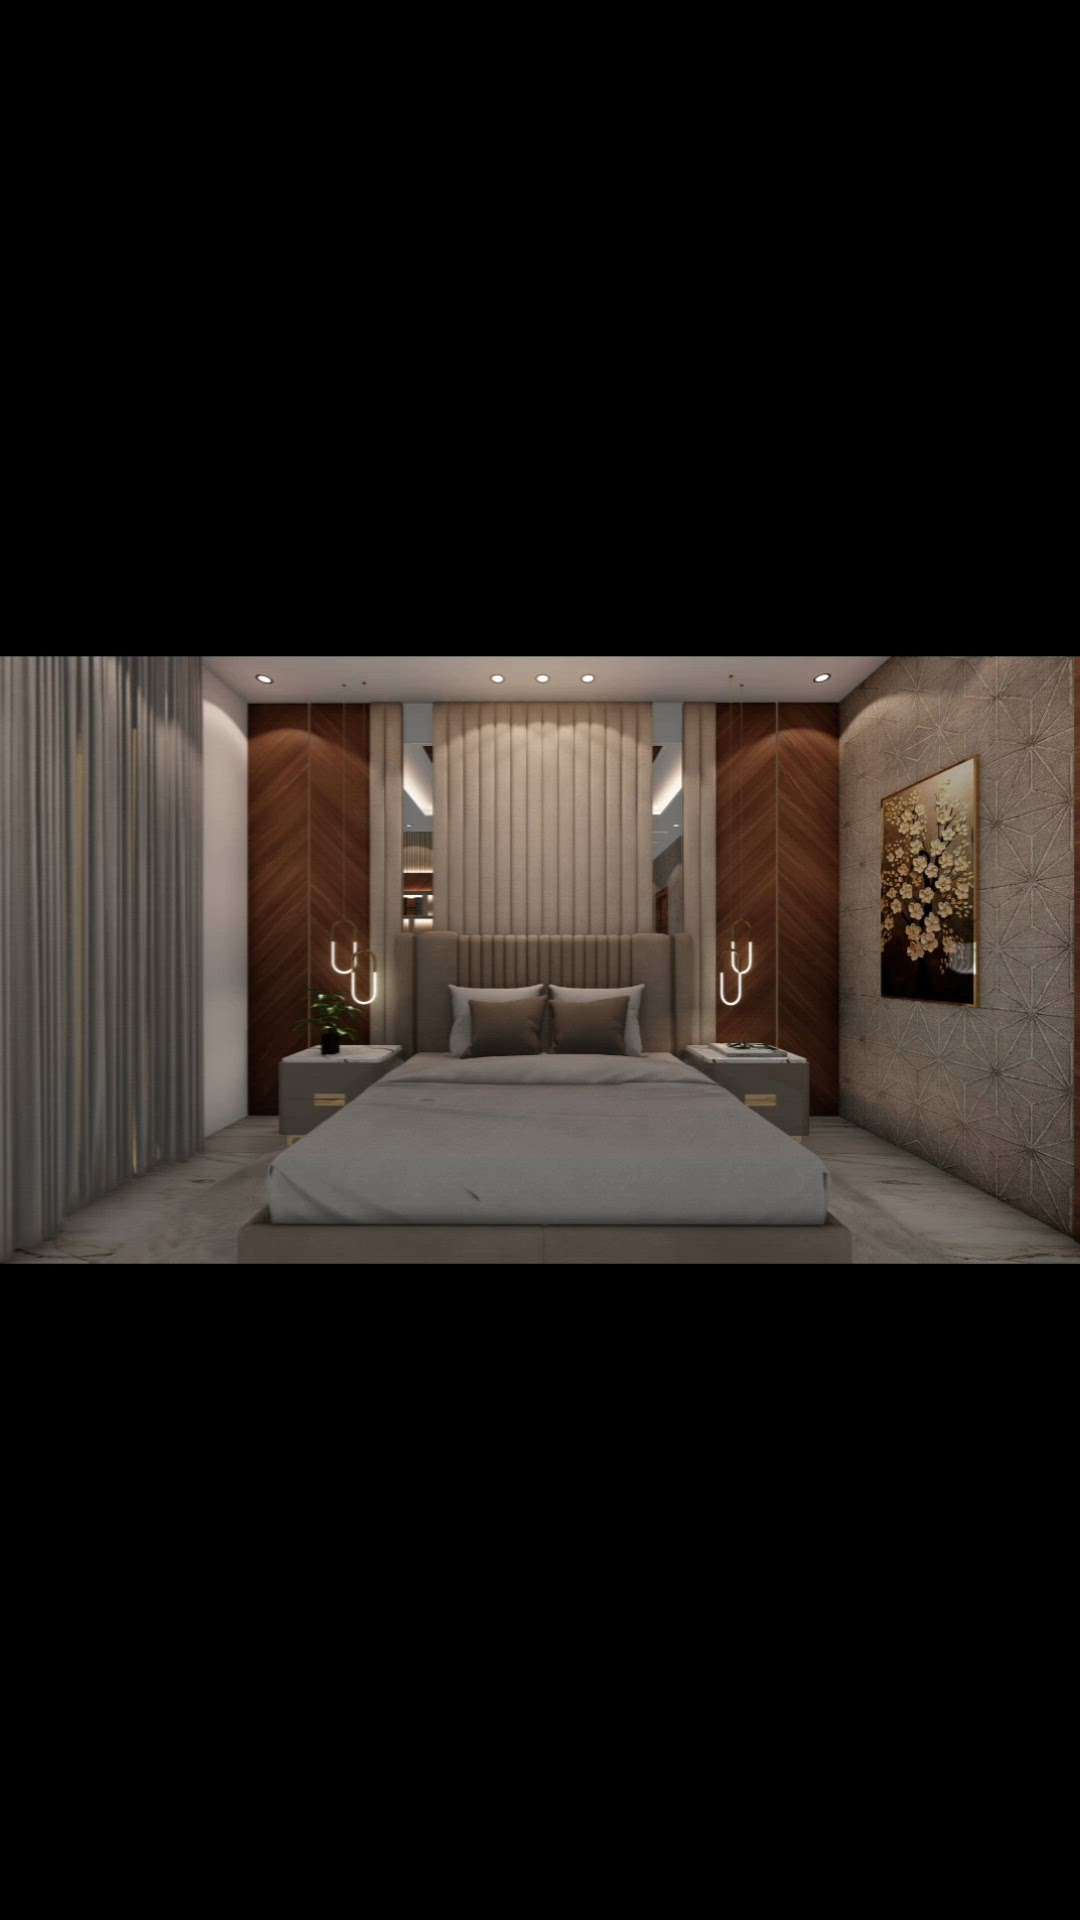 Bedroom Design ❤️
8077017254
 #BedroomDecor  #MasterBedroom  #BedroomDesigns  #BedroomCeilingDesign  #LUXURY_BED  #ModernBedMaking  #bedroomlights  #InteriorDesigner  #Architectural&Interior  #LUXURY_INTERIOR  #interiordesigers